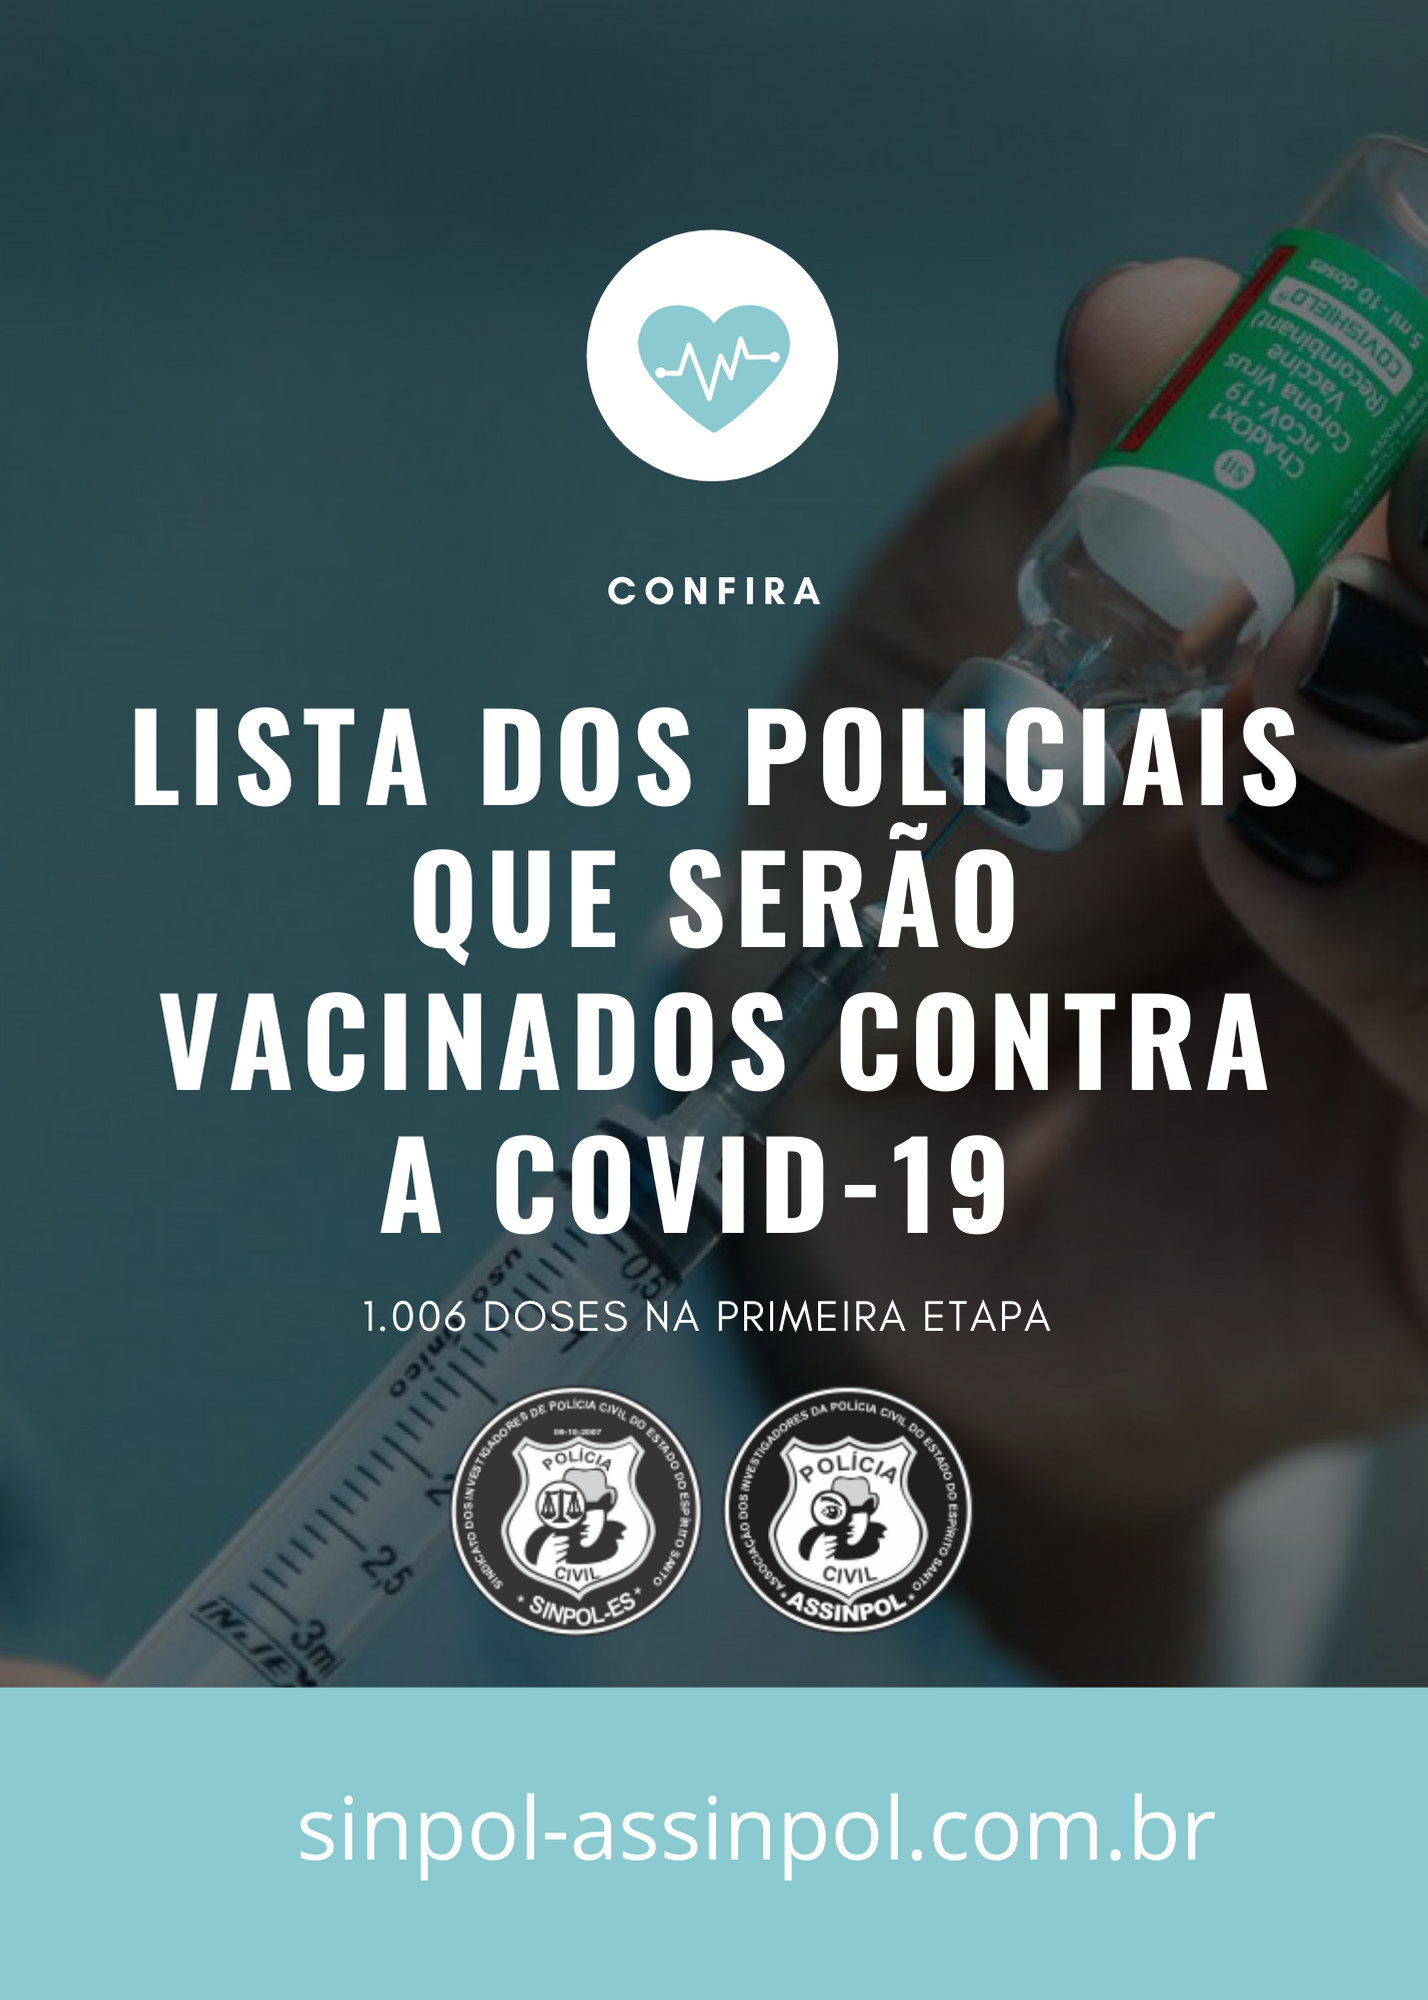 CONFIRA A LISTA DOS POLICIAIS CIVIS QUE SERÃO VACINADOS CONTRA A COVID-19